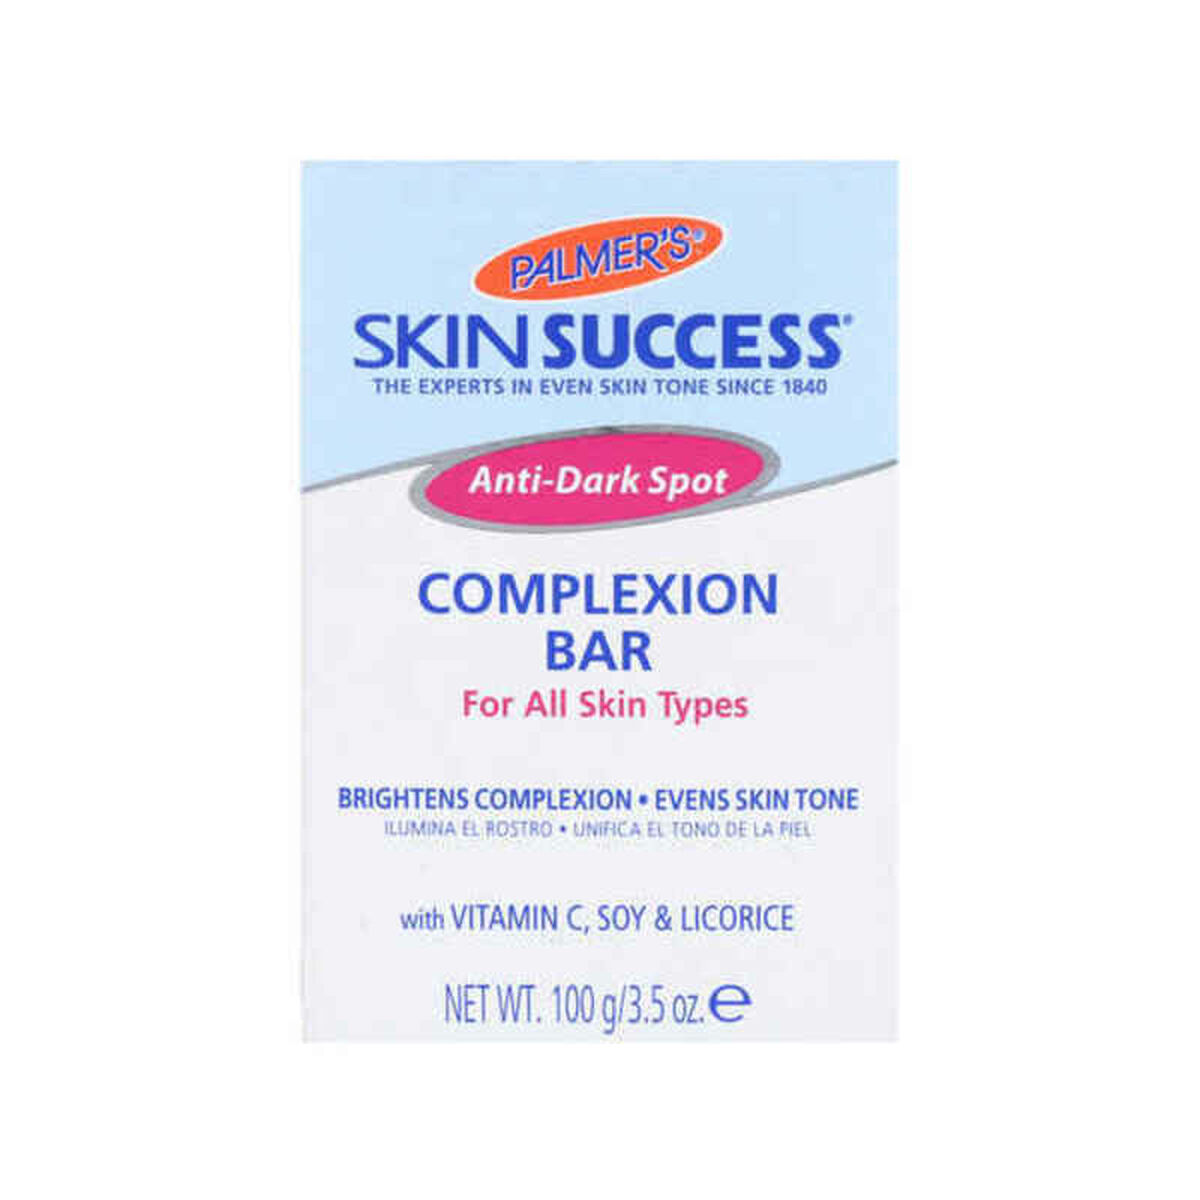 Savon Palmer's Skin Success (100 g)